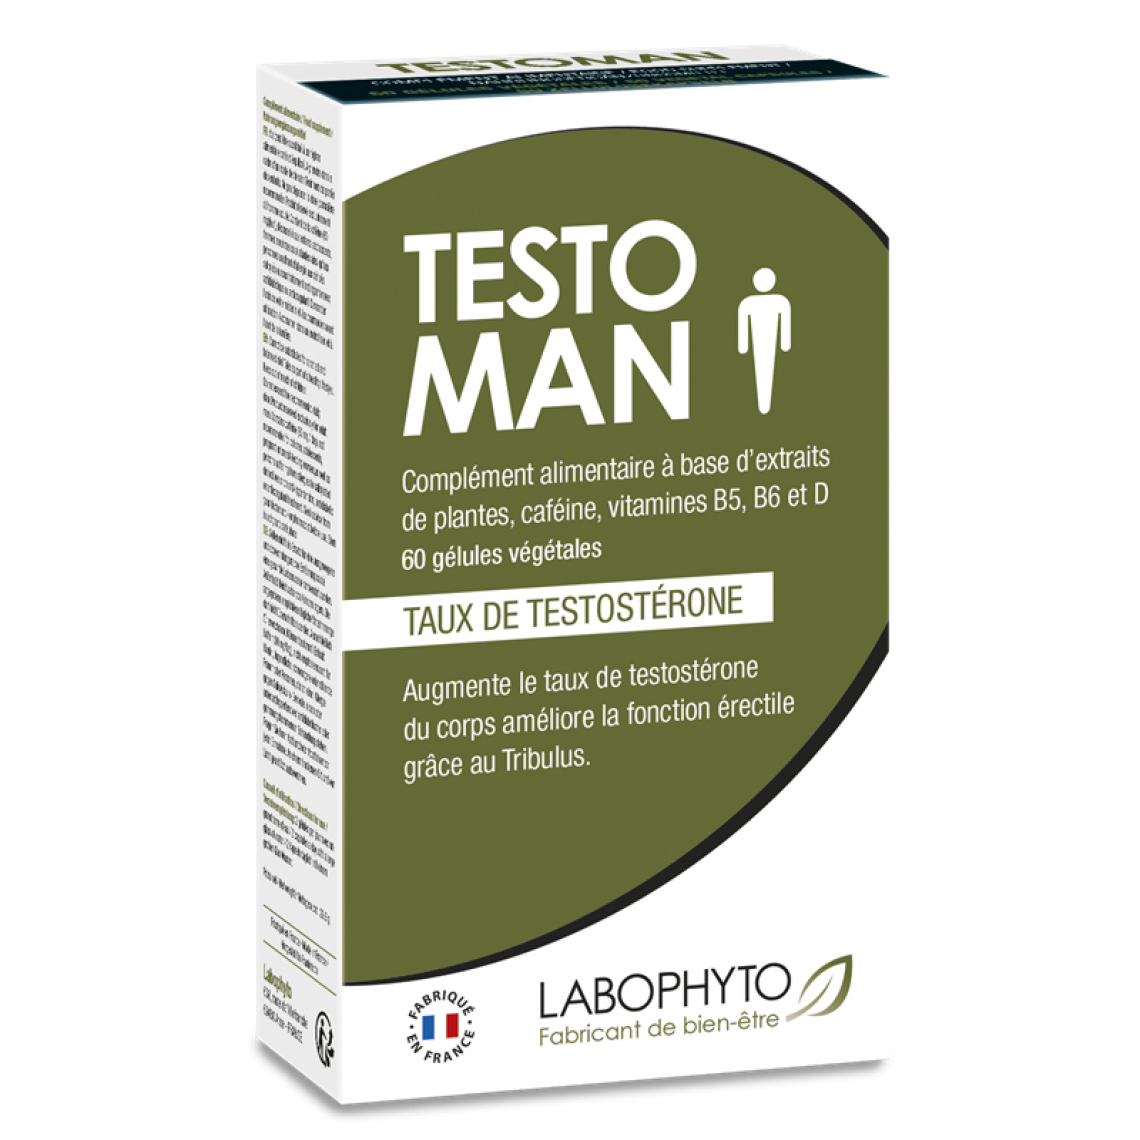 Labophyto-inactif - Testoman Taux de Testosterone - Bouillotte électrique